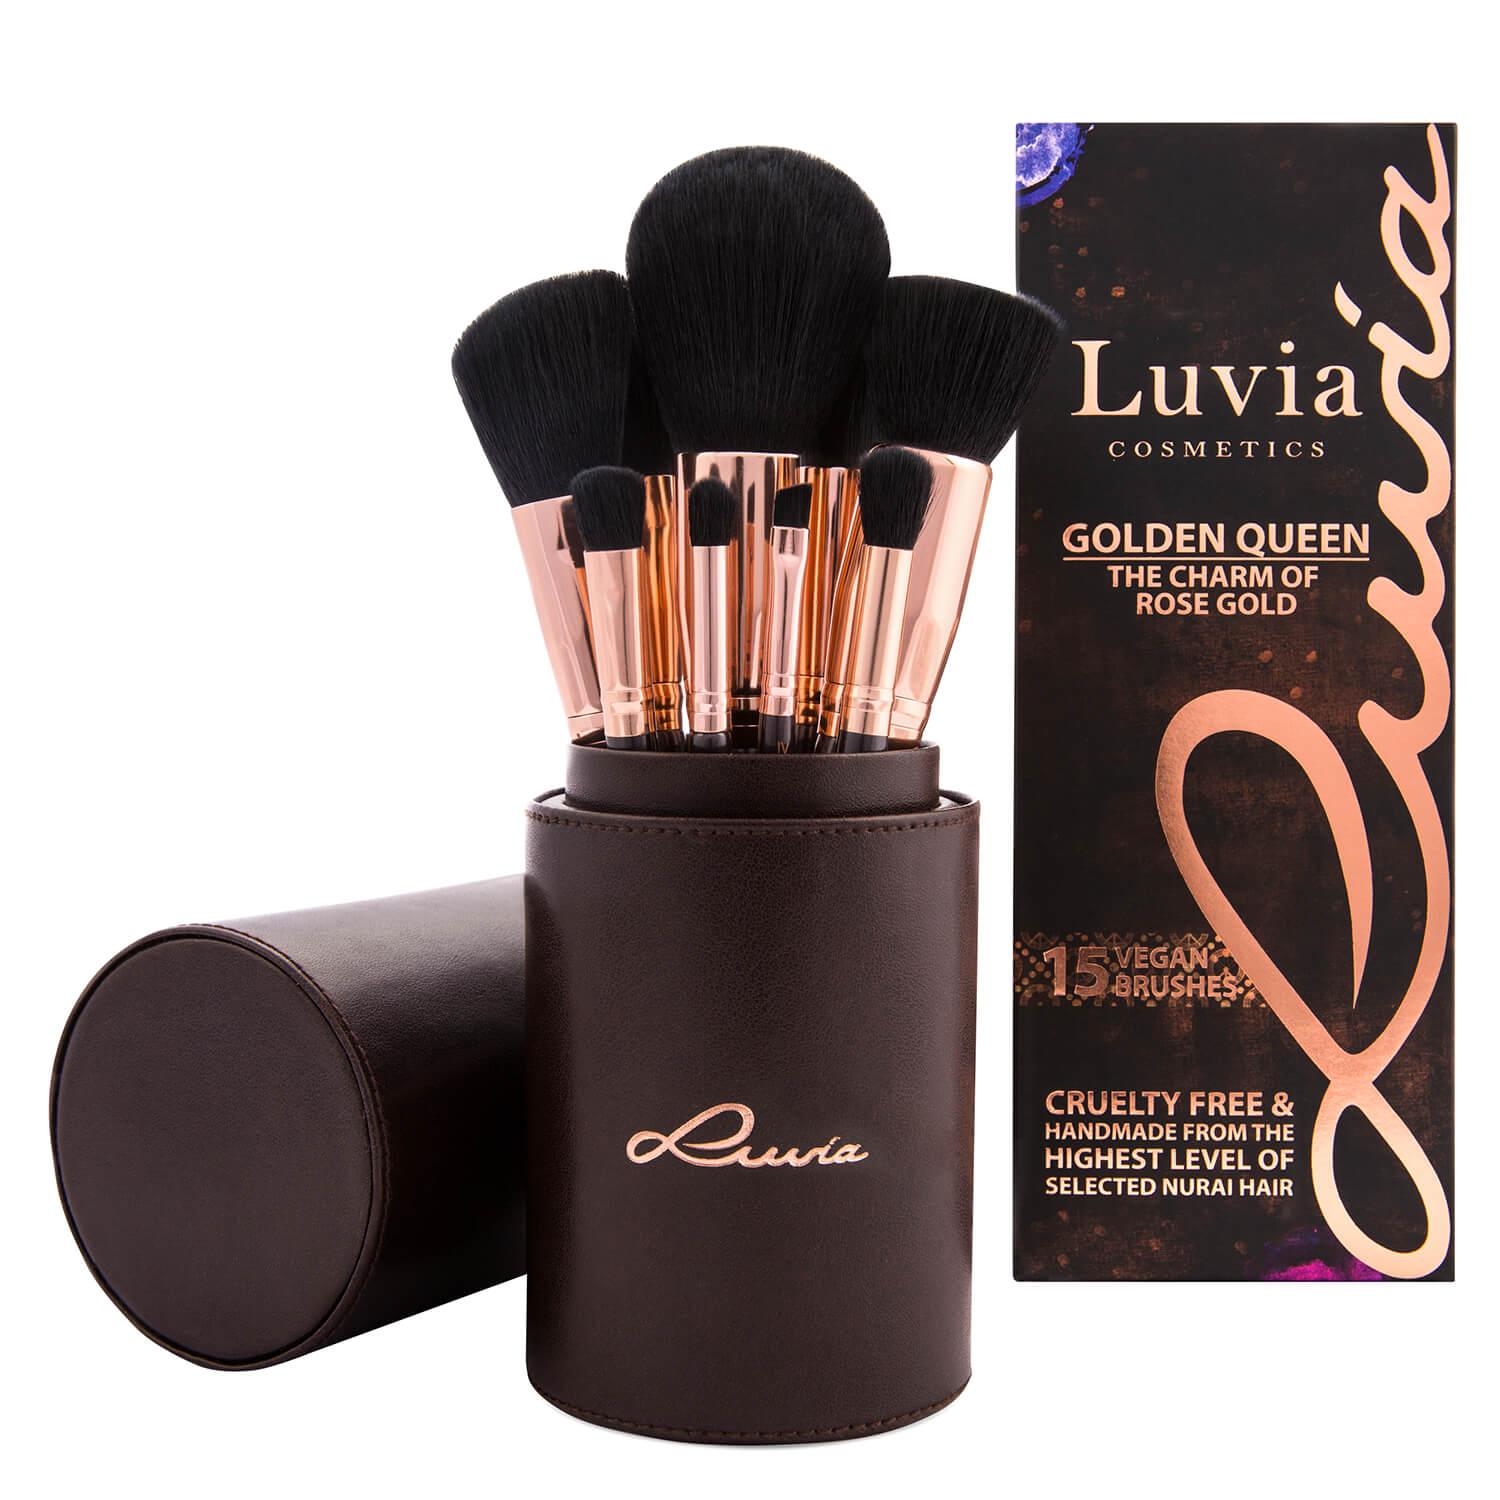 Luvia Cosmetics - Golden Queen